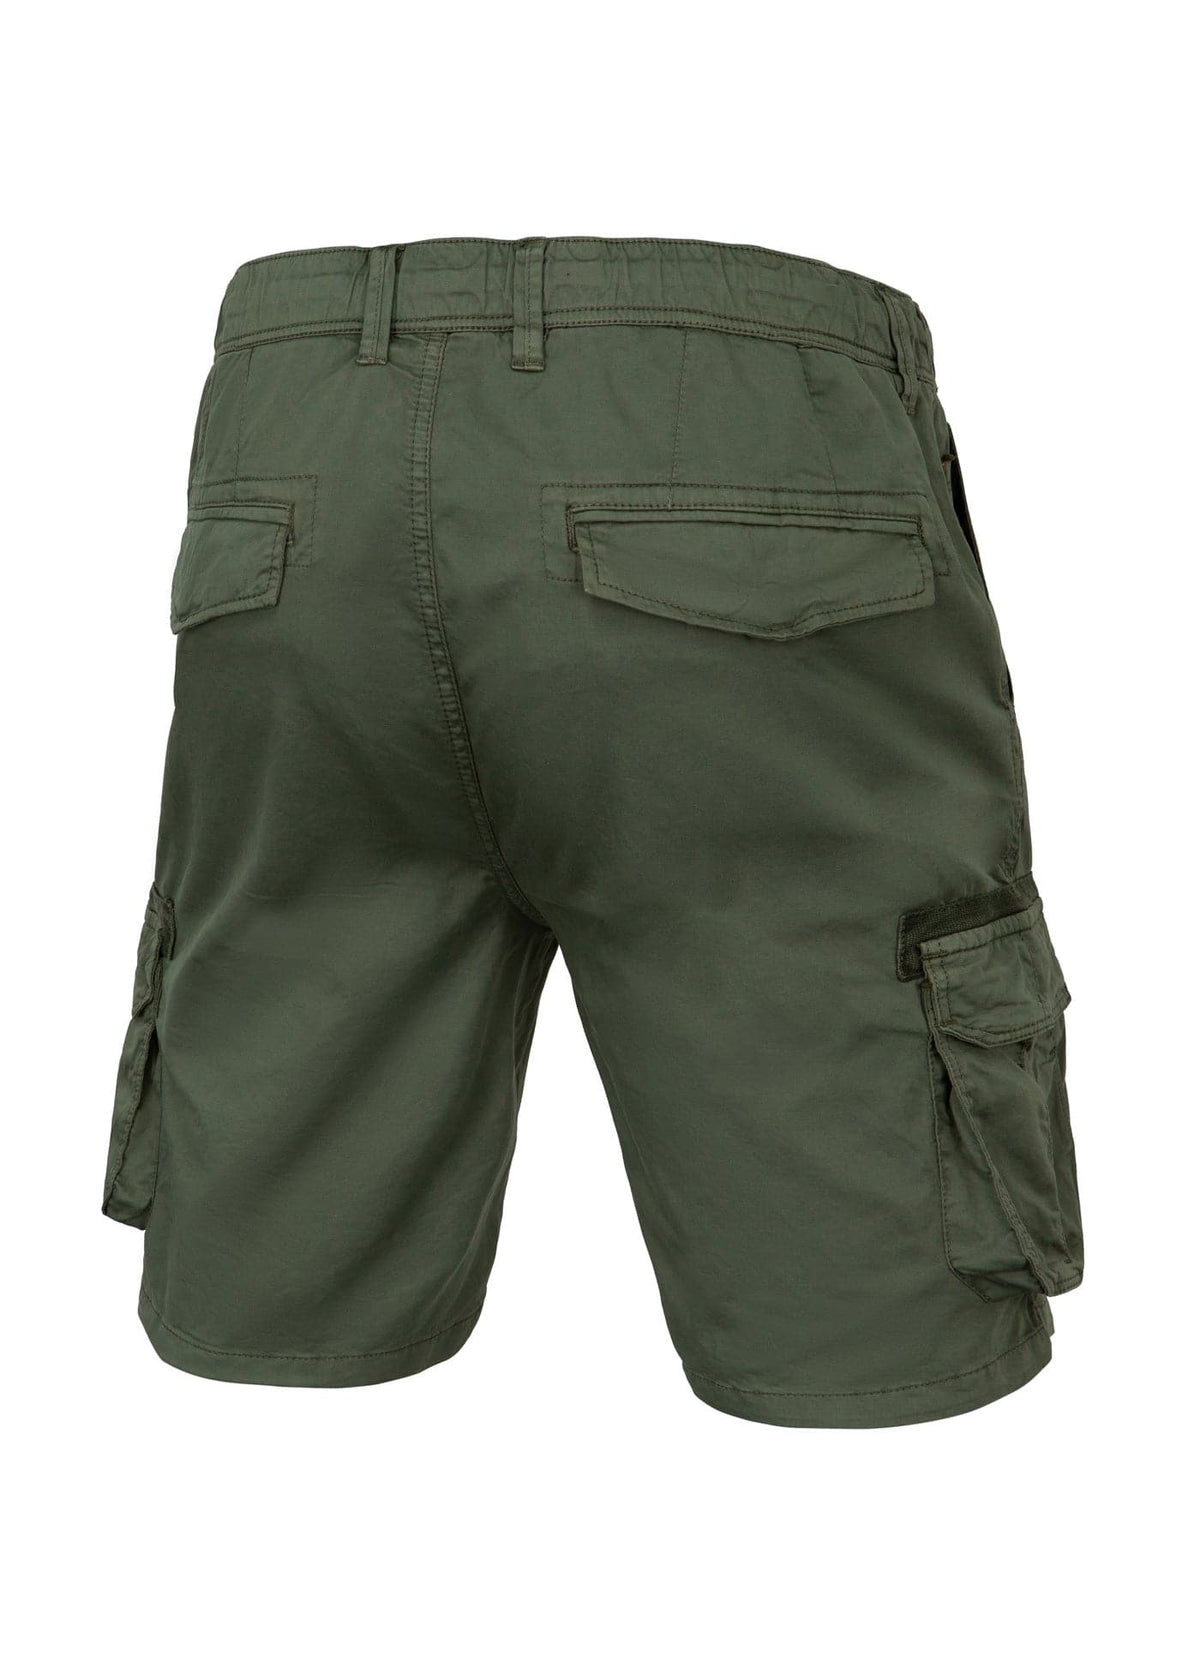 ARAGON Olive Cargo Shorts